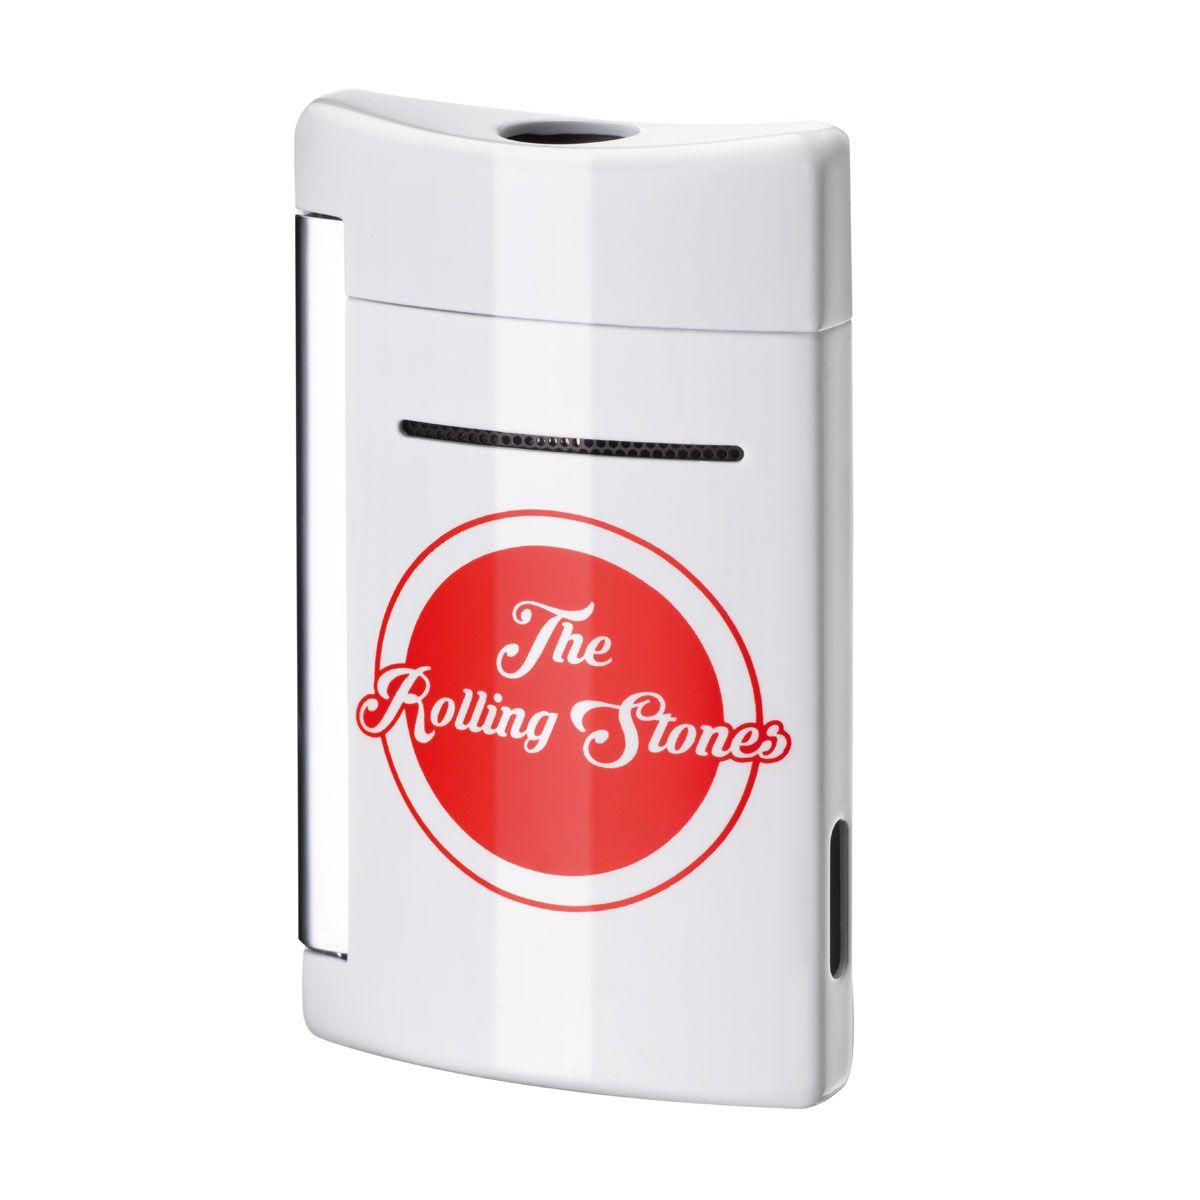 Lighter Logo - ST Dupont Rolling Stones MiniJet Lighter with Logo